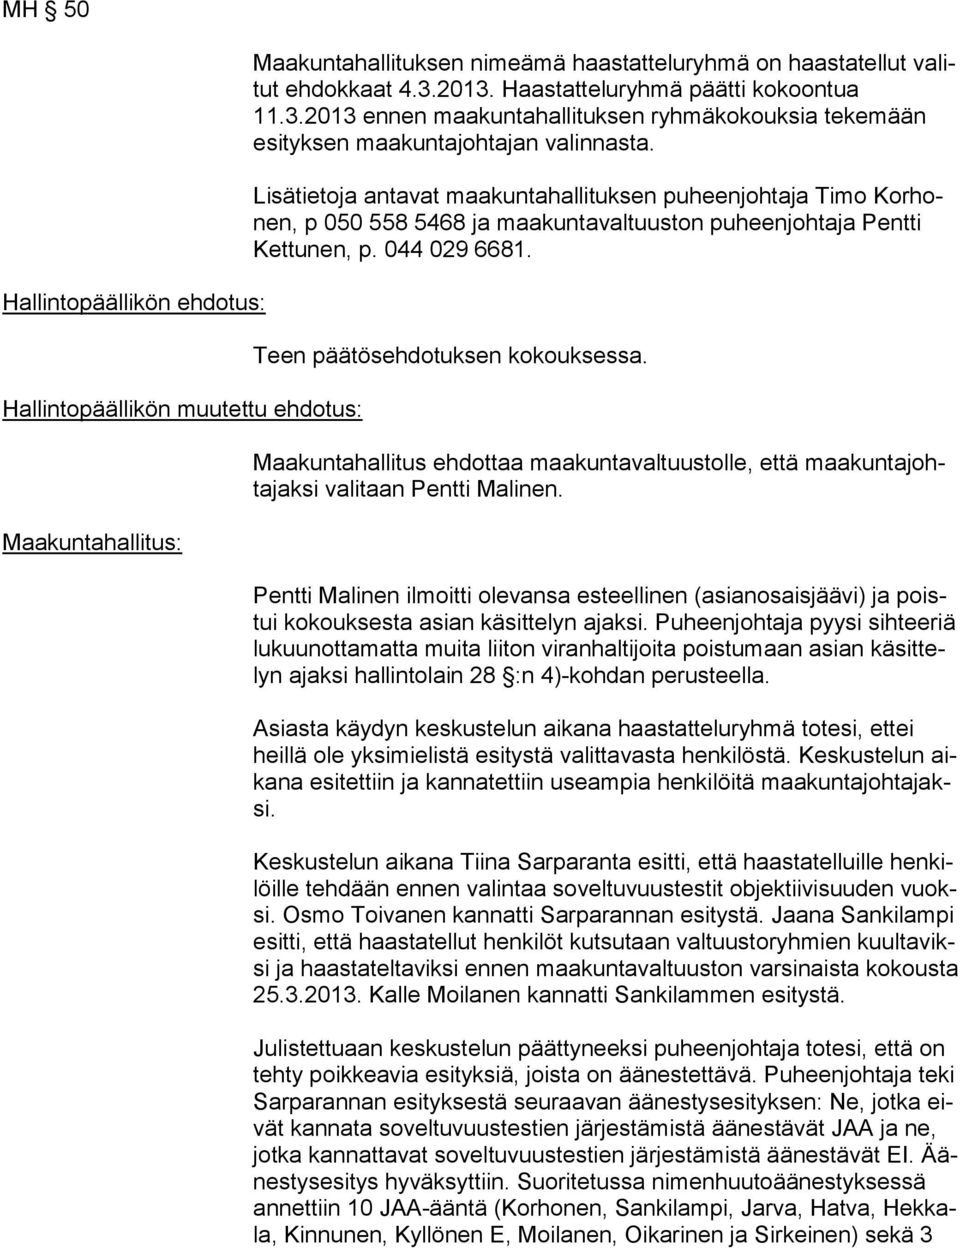 Lisätietoja antavat maakuntahallituksen puheenjohtaja Timo Kor honen, p 050 558 5468 ja maakuntavaltuuston puheenjohtaja Pentti Ket tu nen, p. 044 029 6681. Teen päätösehdotuksen kokouksessa.